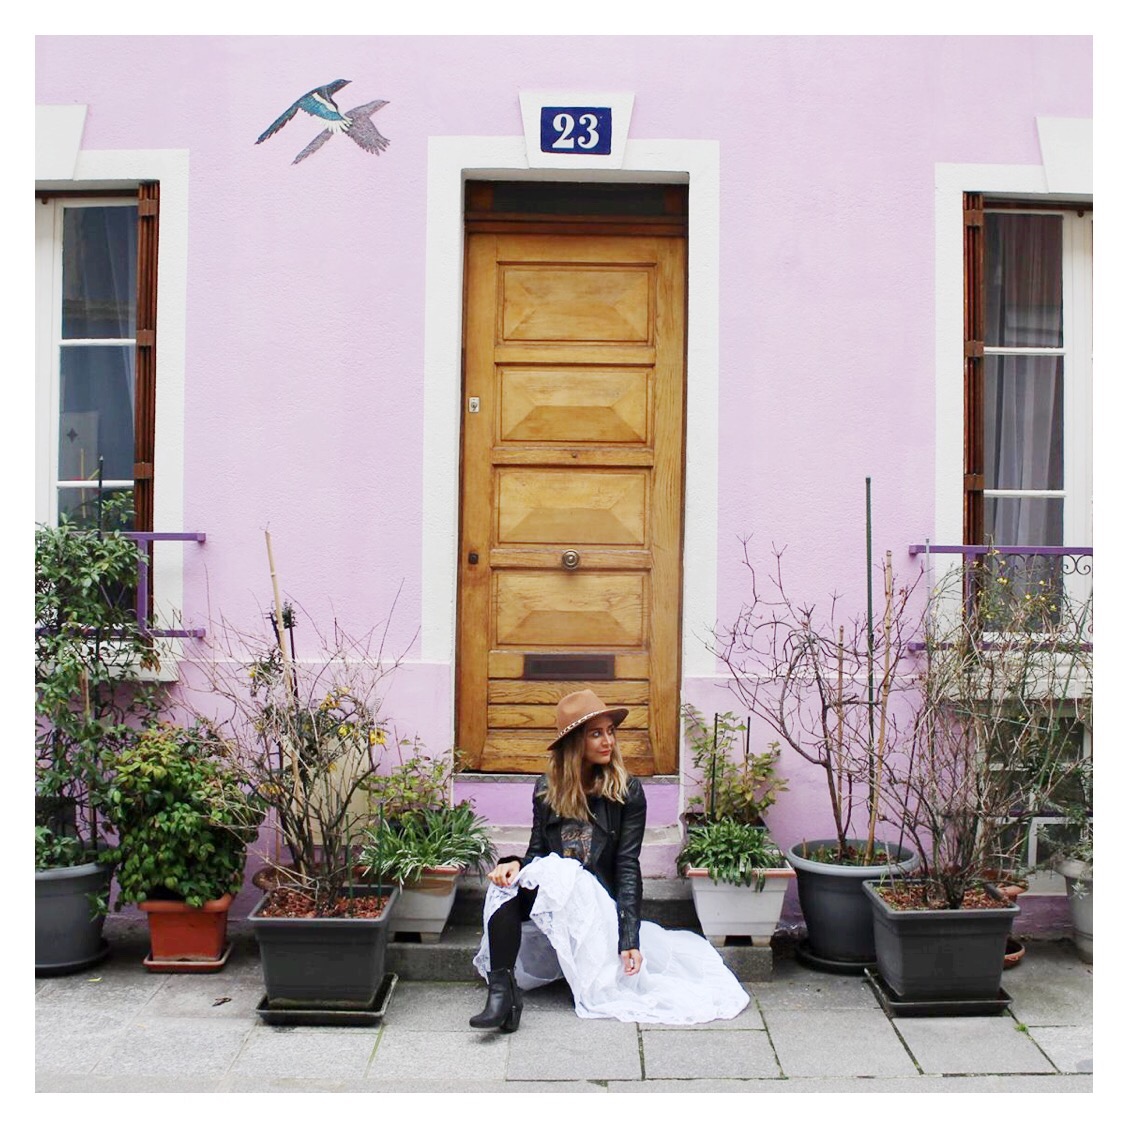 Doorsteps, stairways & colour pop walls: Top ten insta photo ops around the world